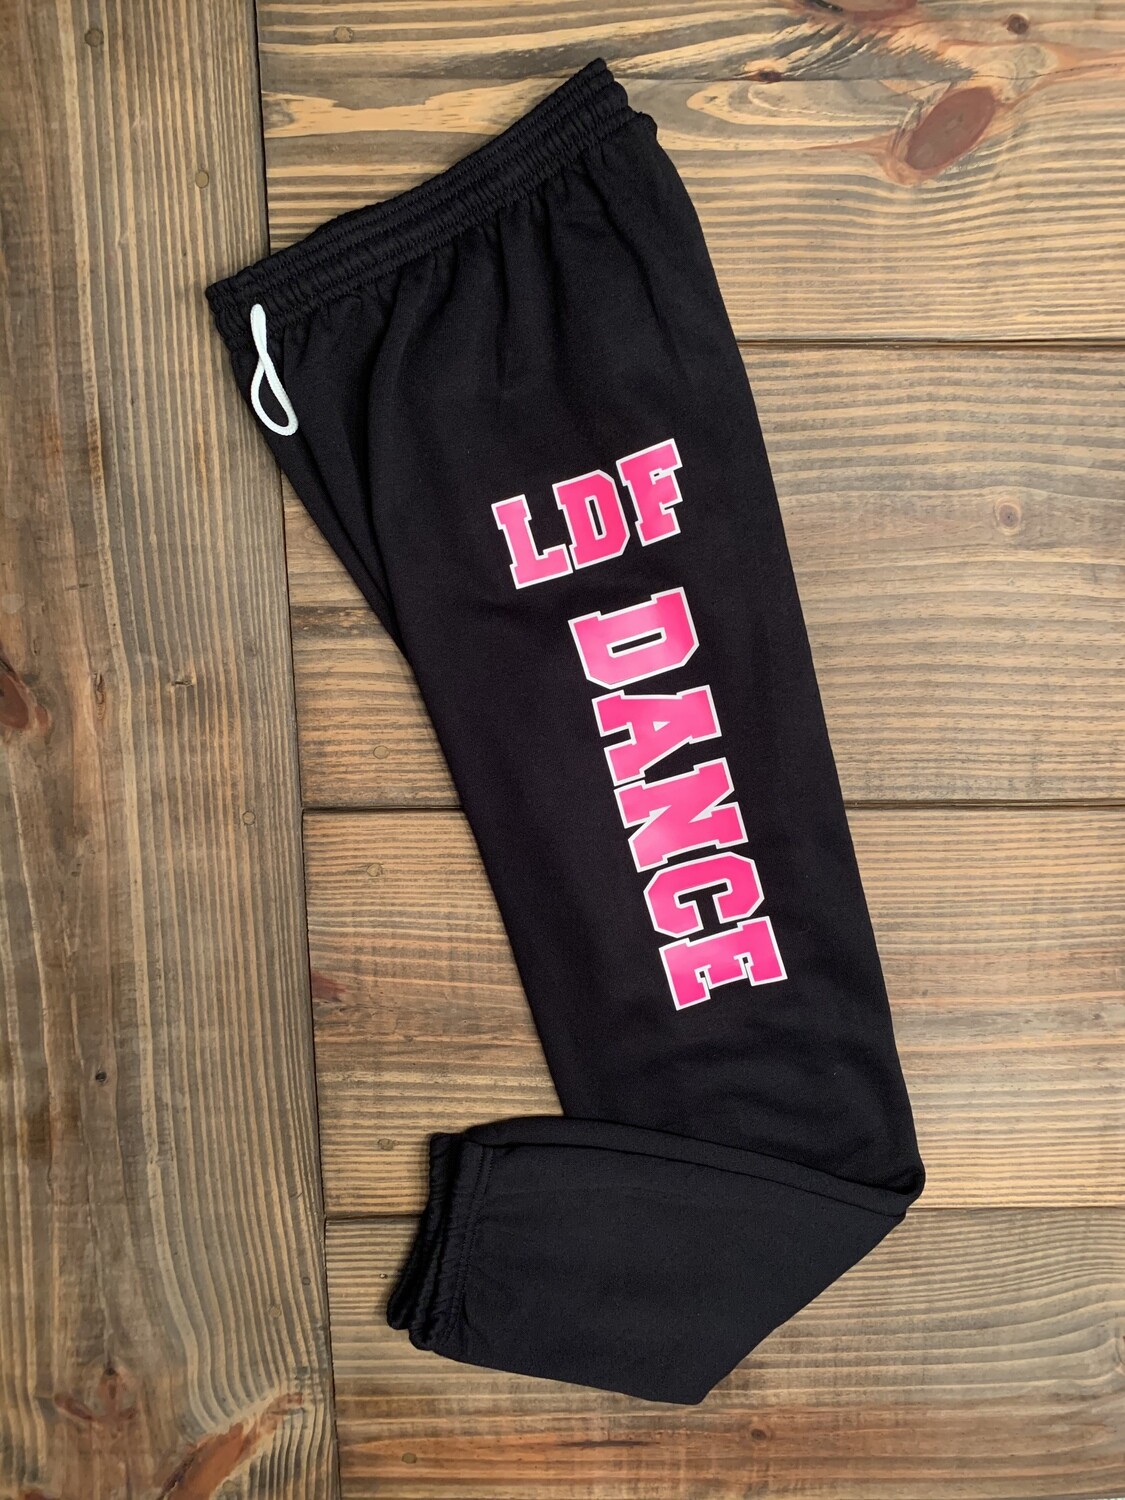 Adult LDF Dance Sponge Fleece Long Scrunch Black and Pink Sweatpants (LDF)